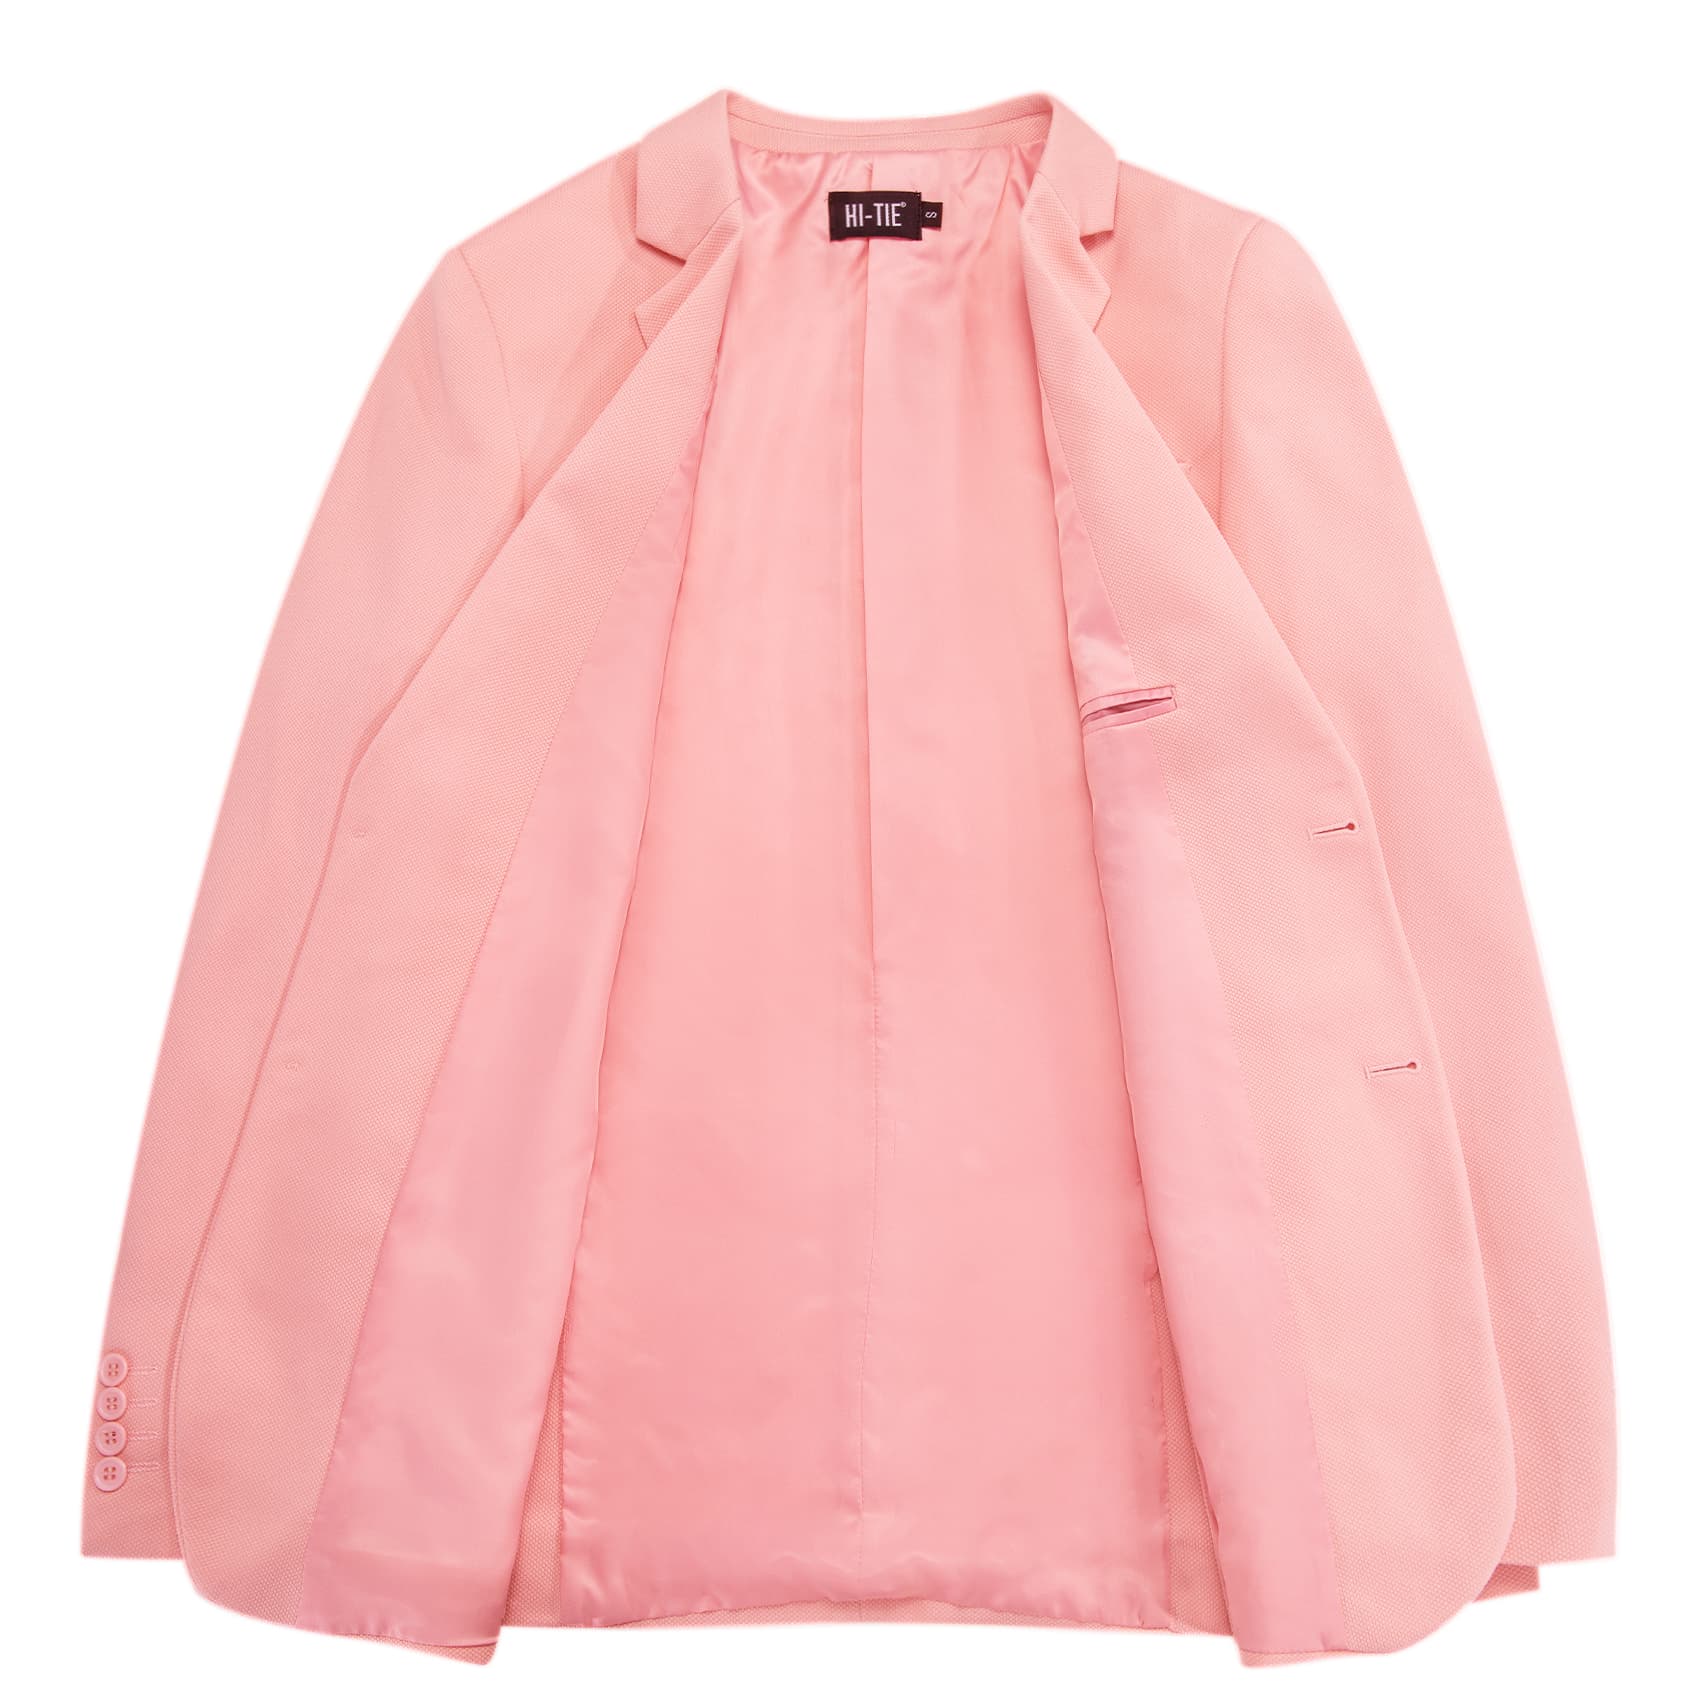 Business Daily Blazer Pink Men's Suit Jacket Slim Fit Coat